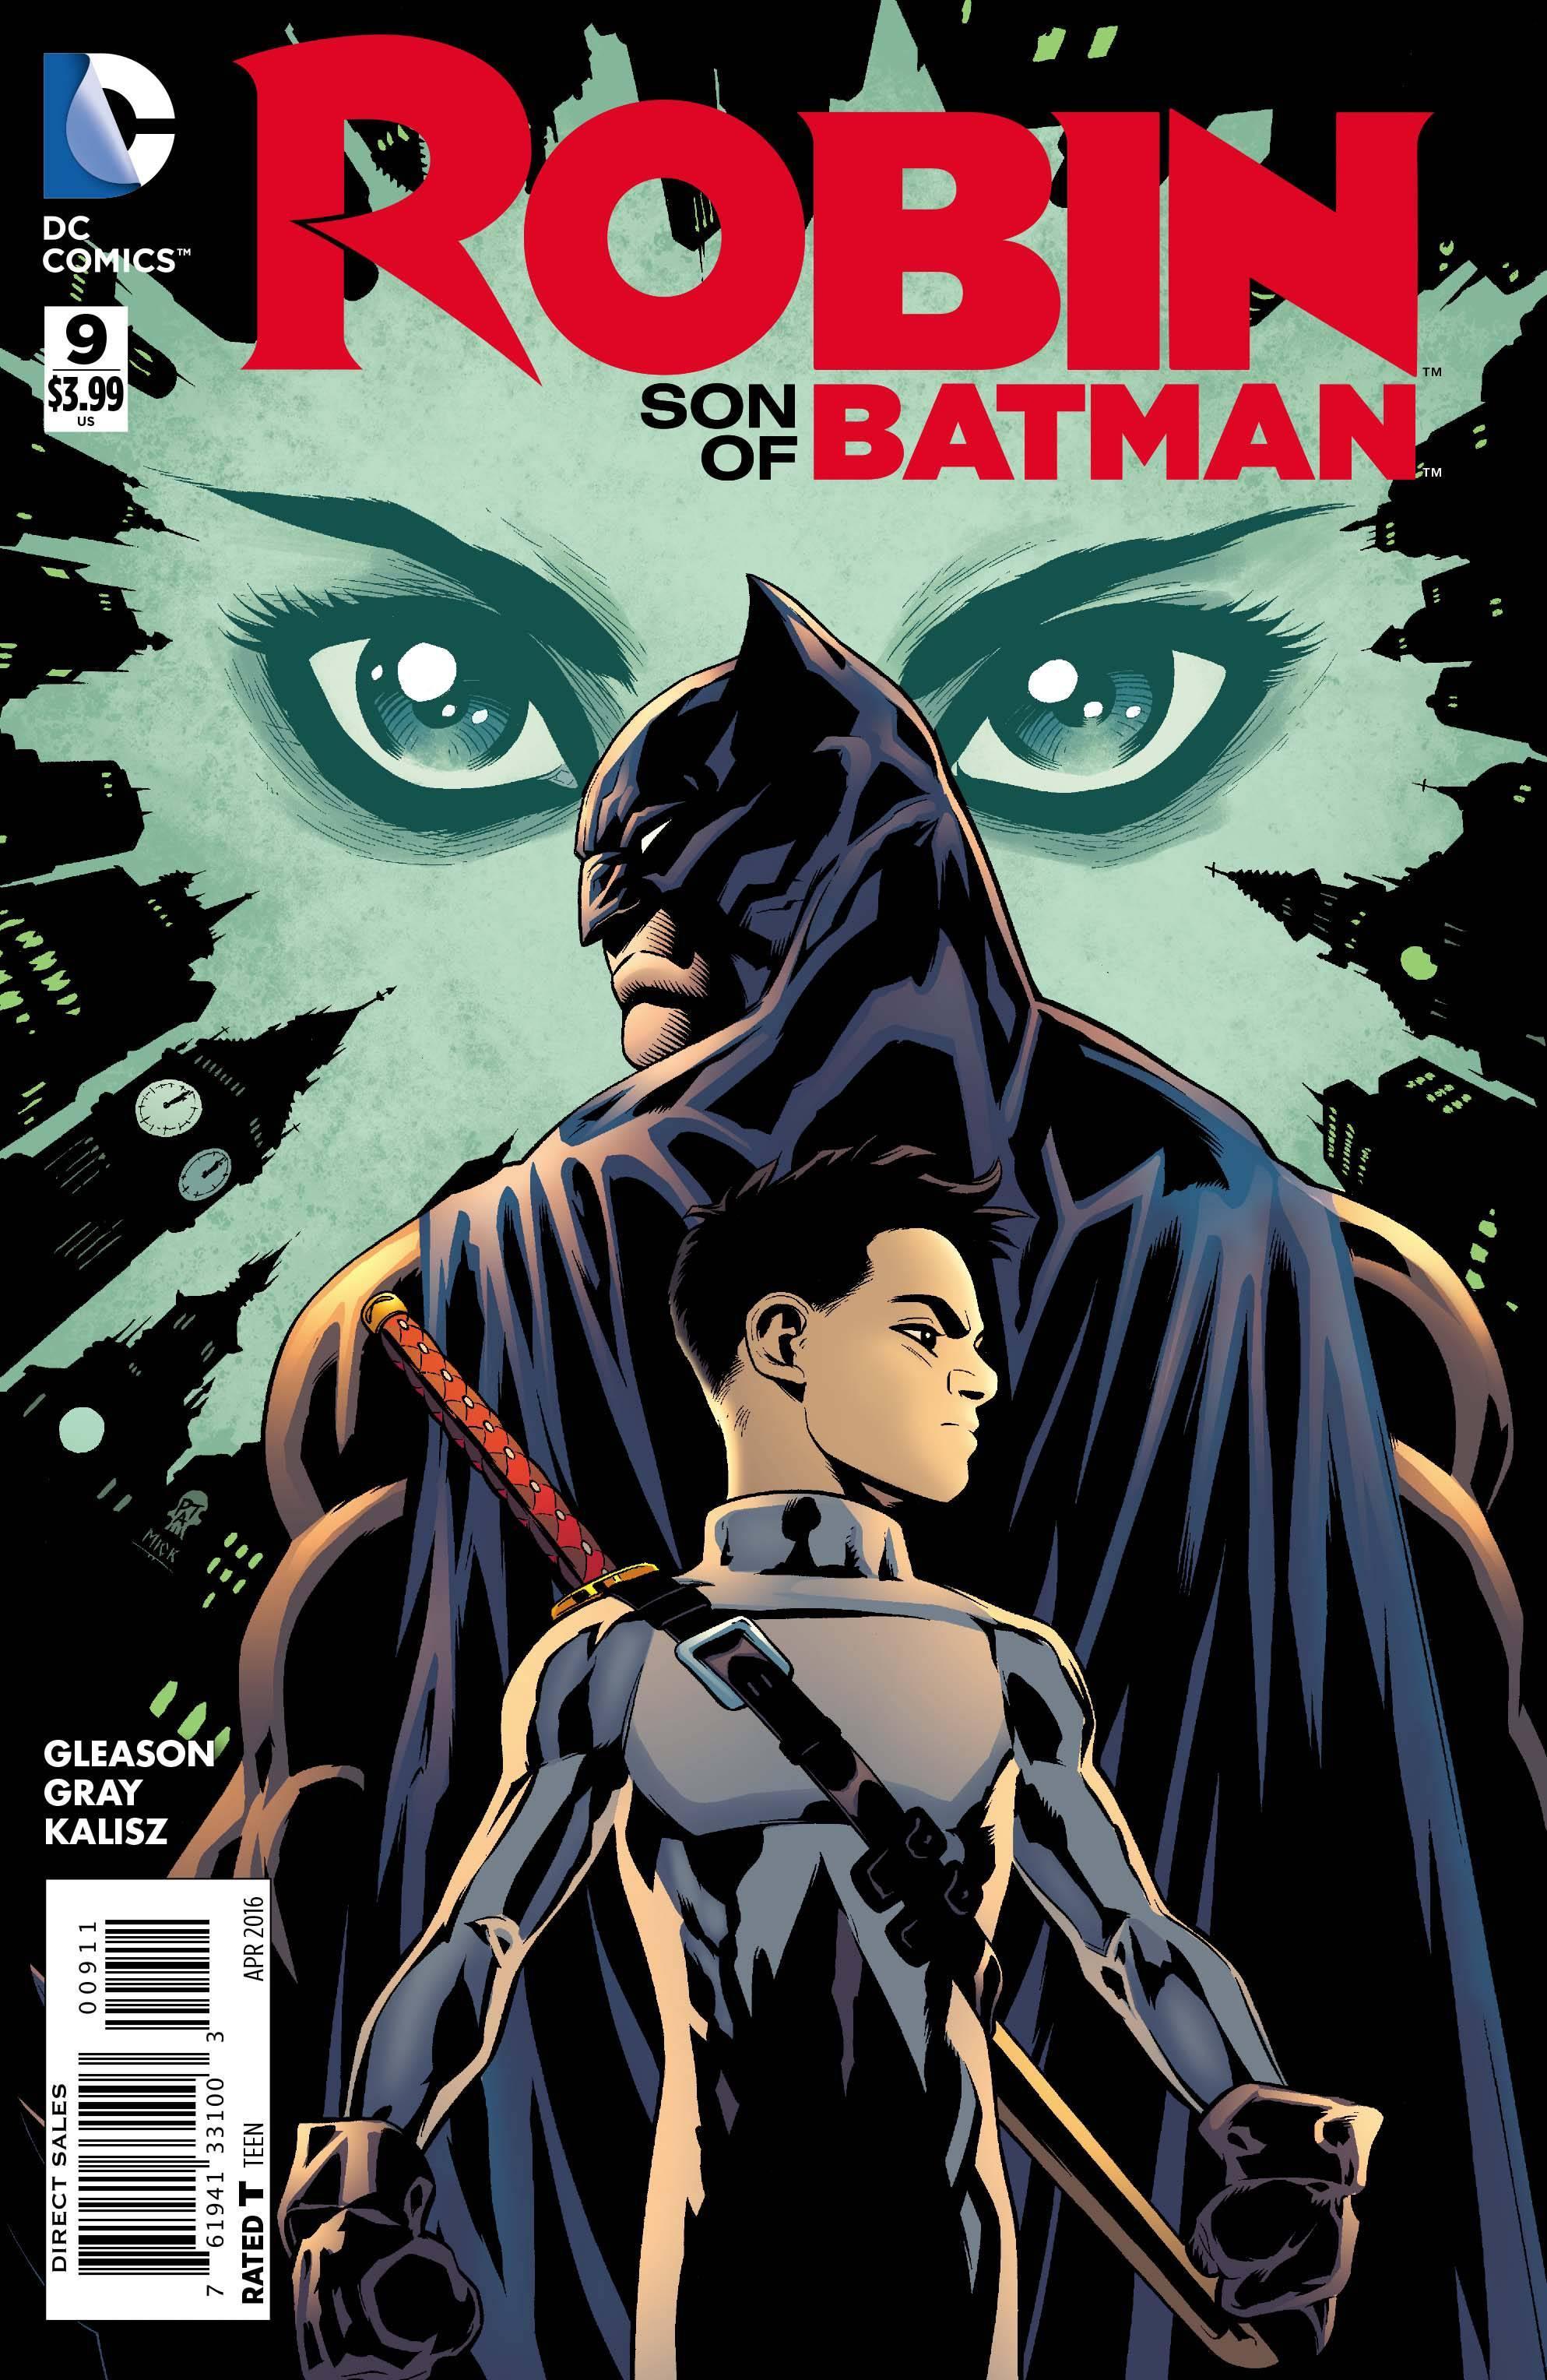 ROBIN SON OF BATMAN #9 - Kings Comics